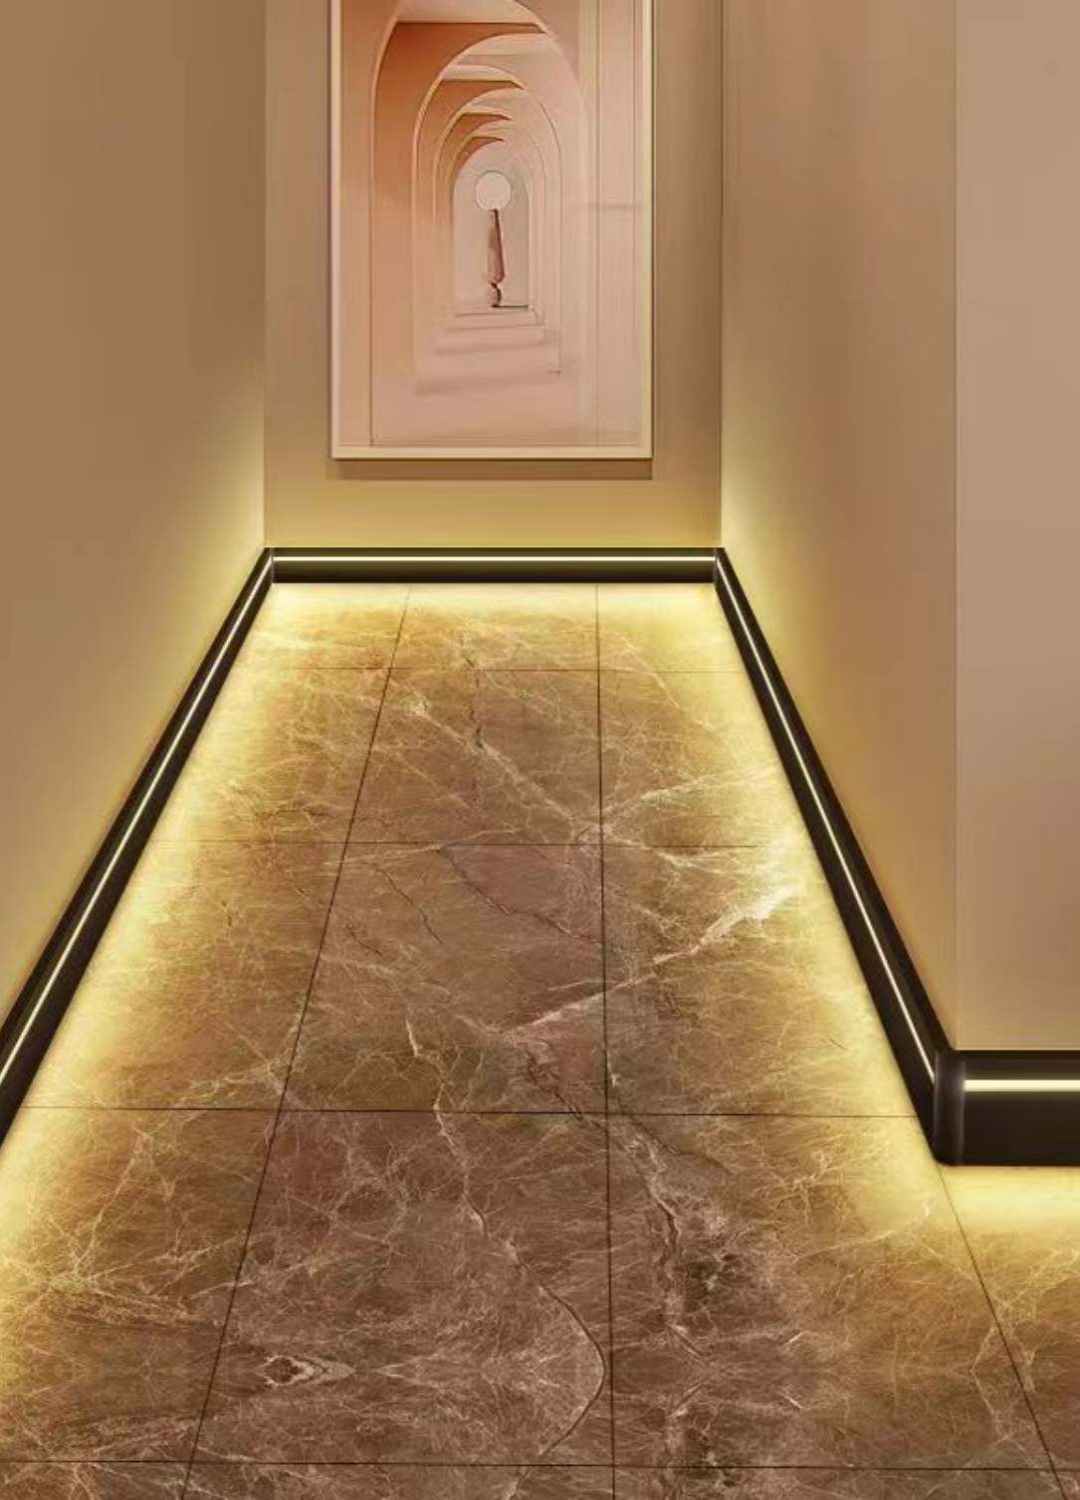 Iluminación de suelos: Instala tiras de LED a lo largo de los bordes de los suelos de tu salón o pasillo para crear un efecto impresionante. Esto hará que su casa parezca más espaciosa y elegante.